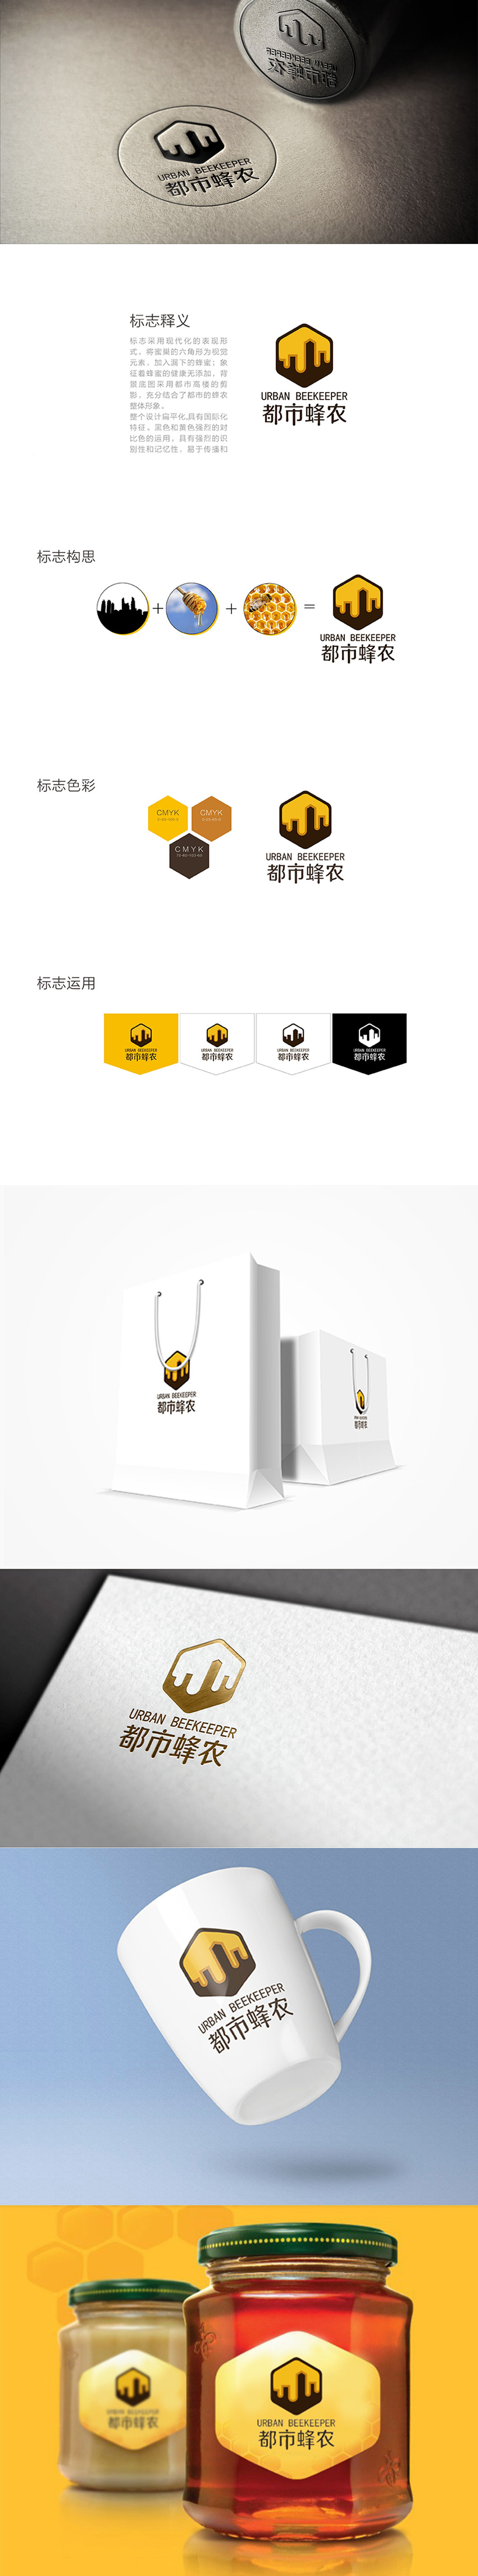 【珠海都市蜂农】logo设计